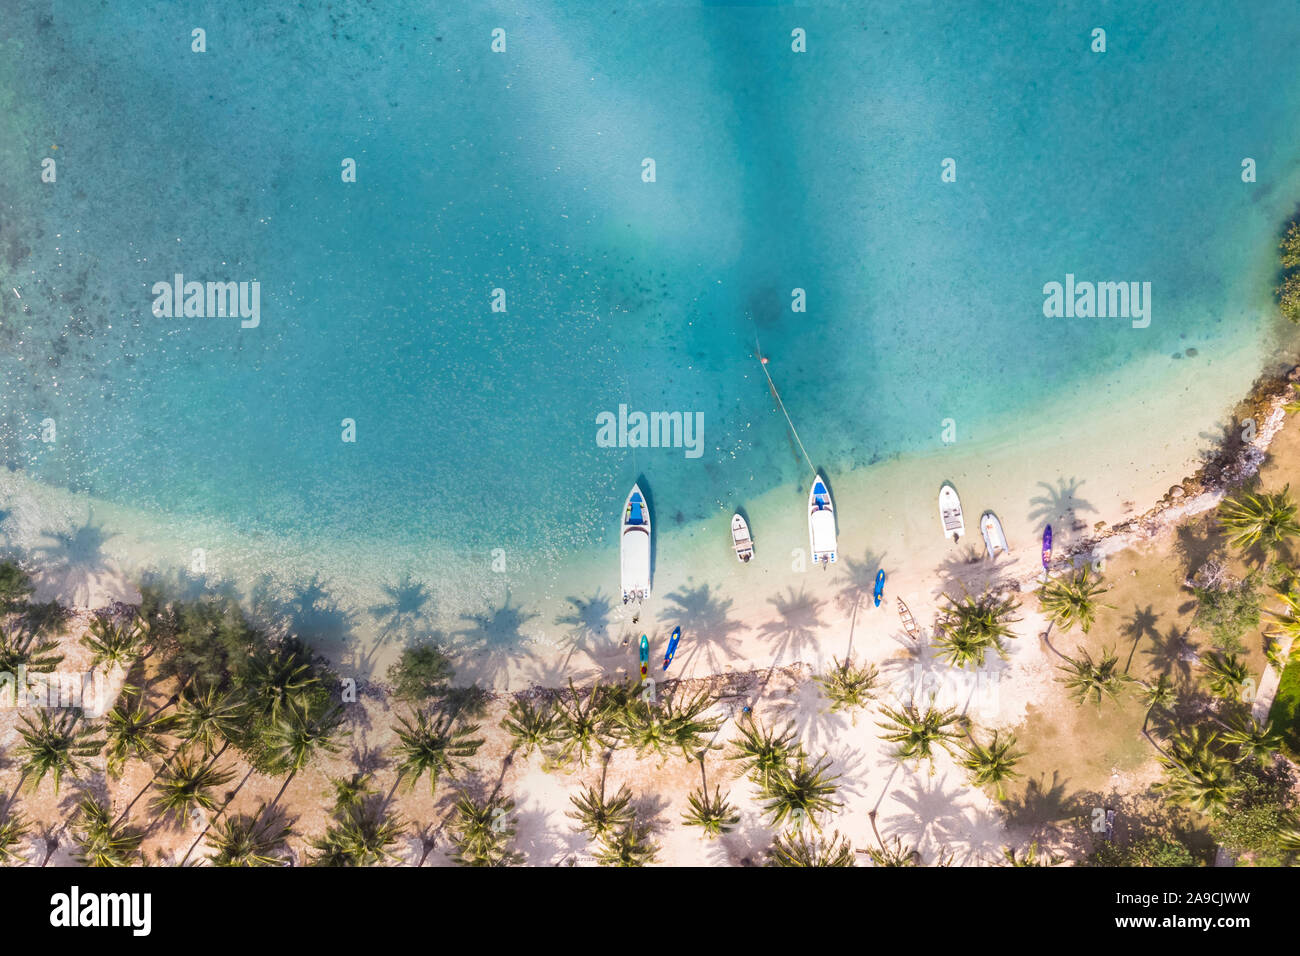 Tropical Beach Luftaufnahmen mit Kokosnuss Palmen entlang der Küste und Meer Wasser blau transparent mit Coral Reef, ein Paradies Urlaub Ferien d Stockfoto